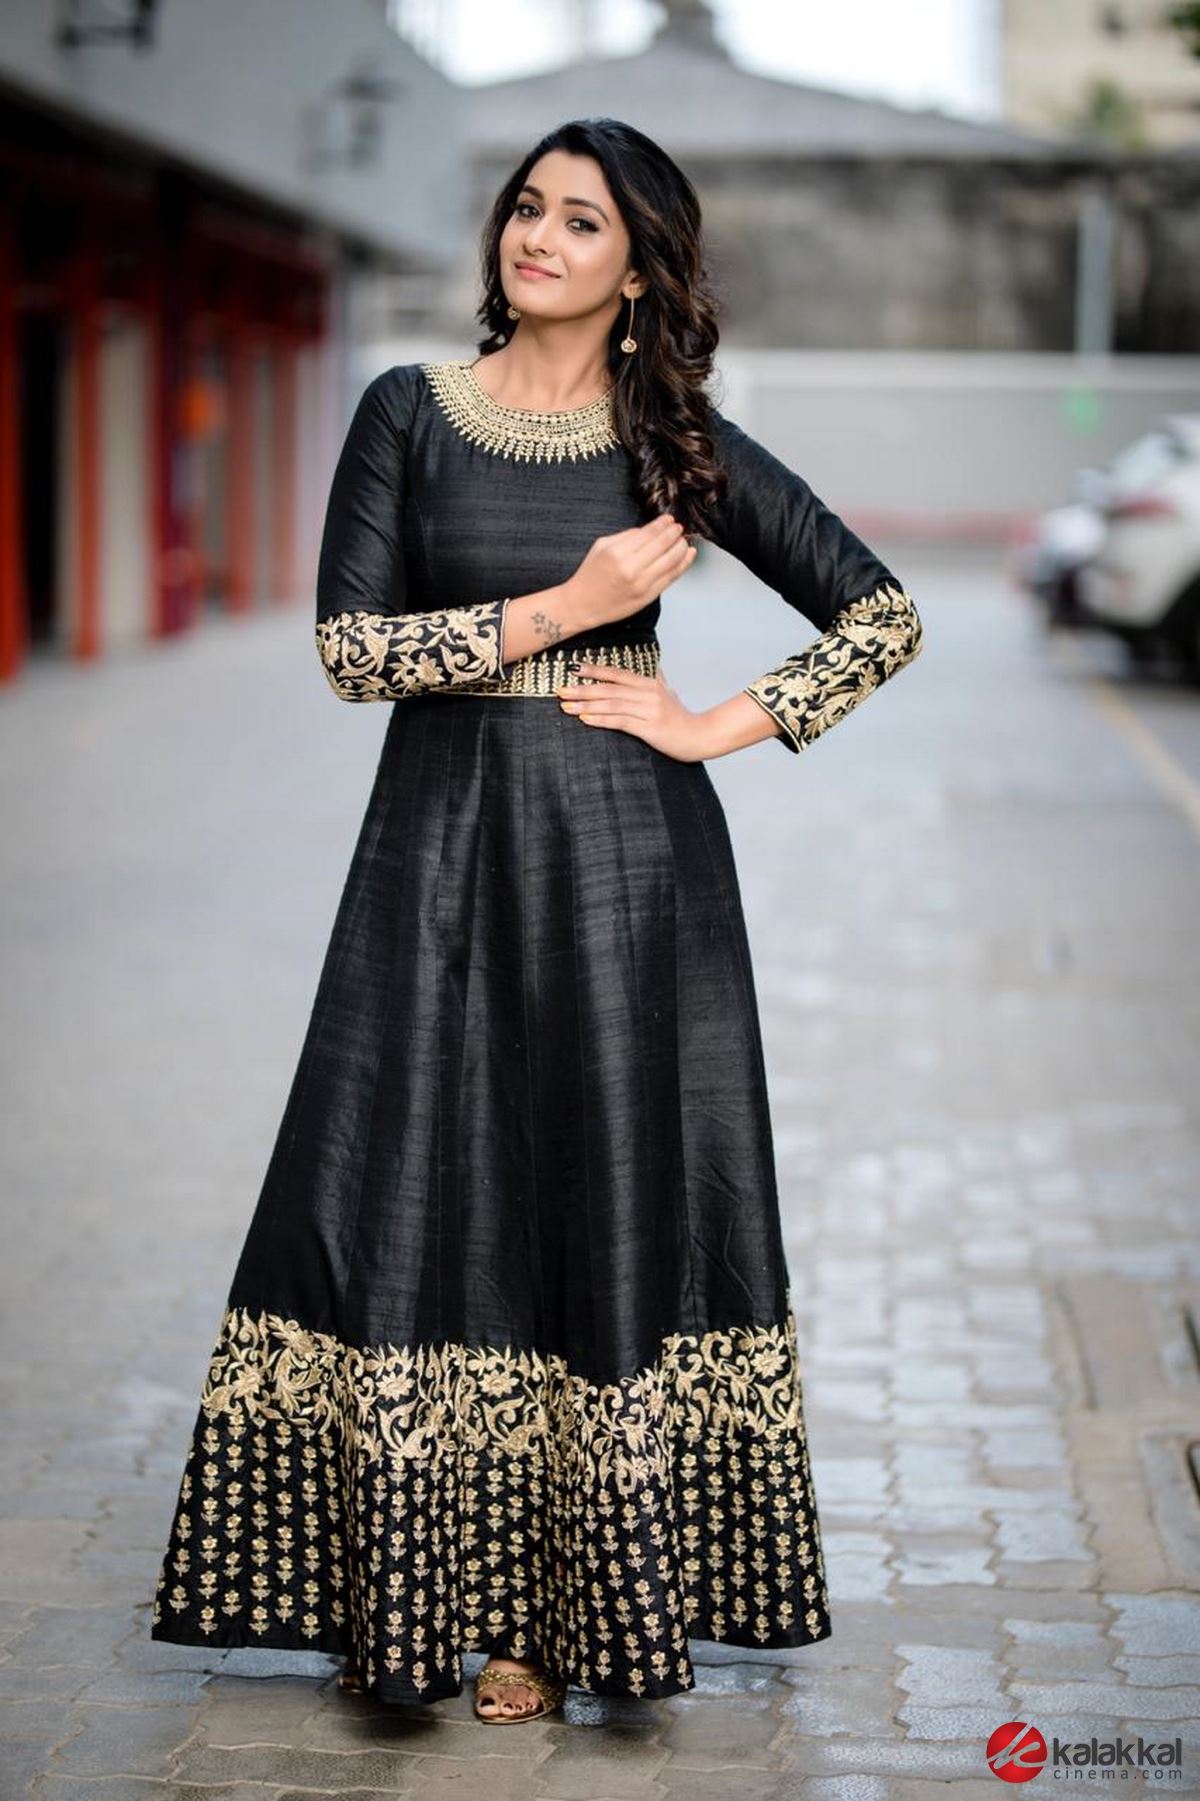 Actress Priya Bhavani Shankar Photos